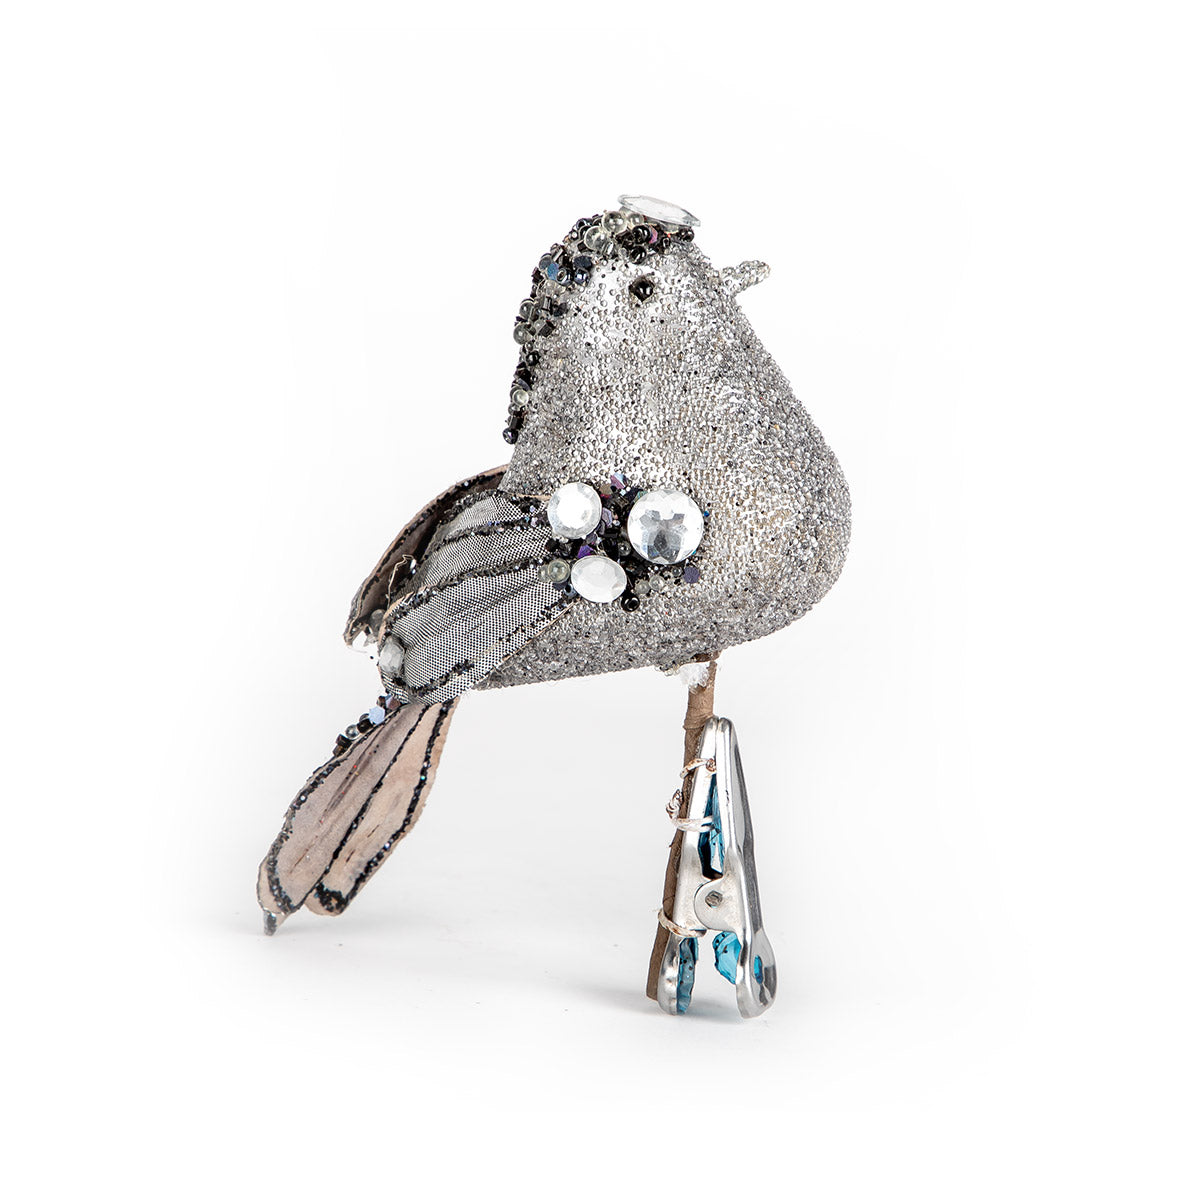 Ebo Silver Orn Bird With Clip Zga